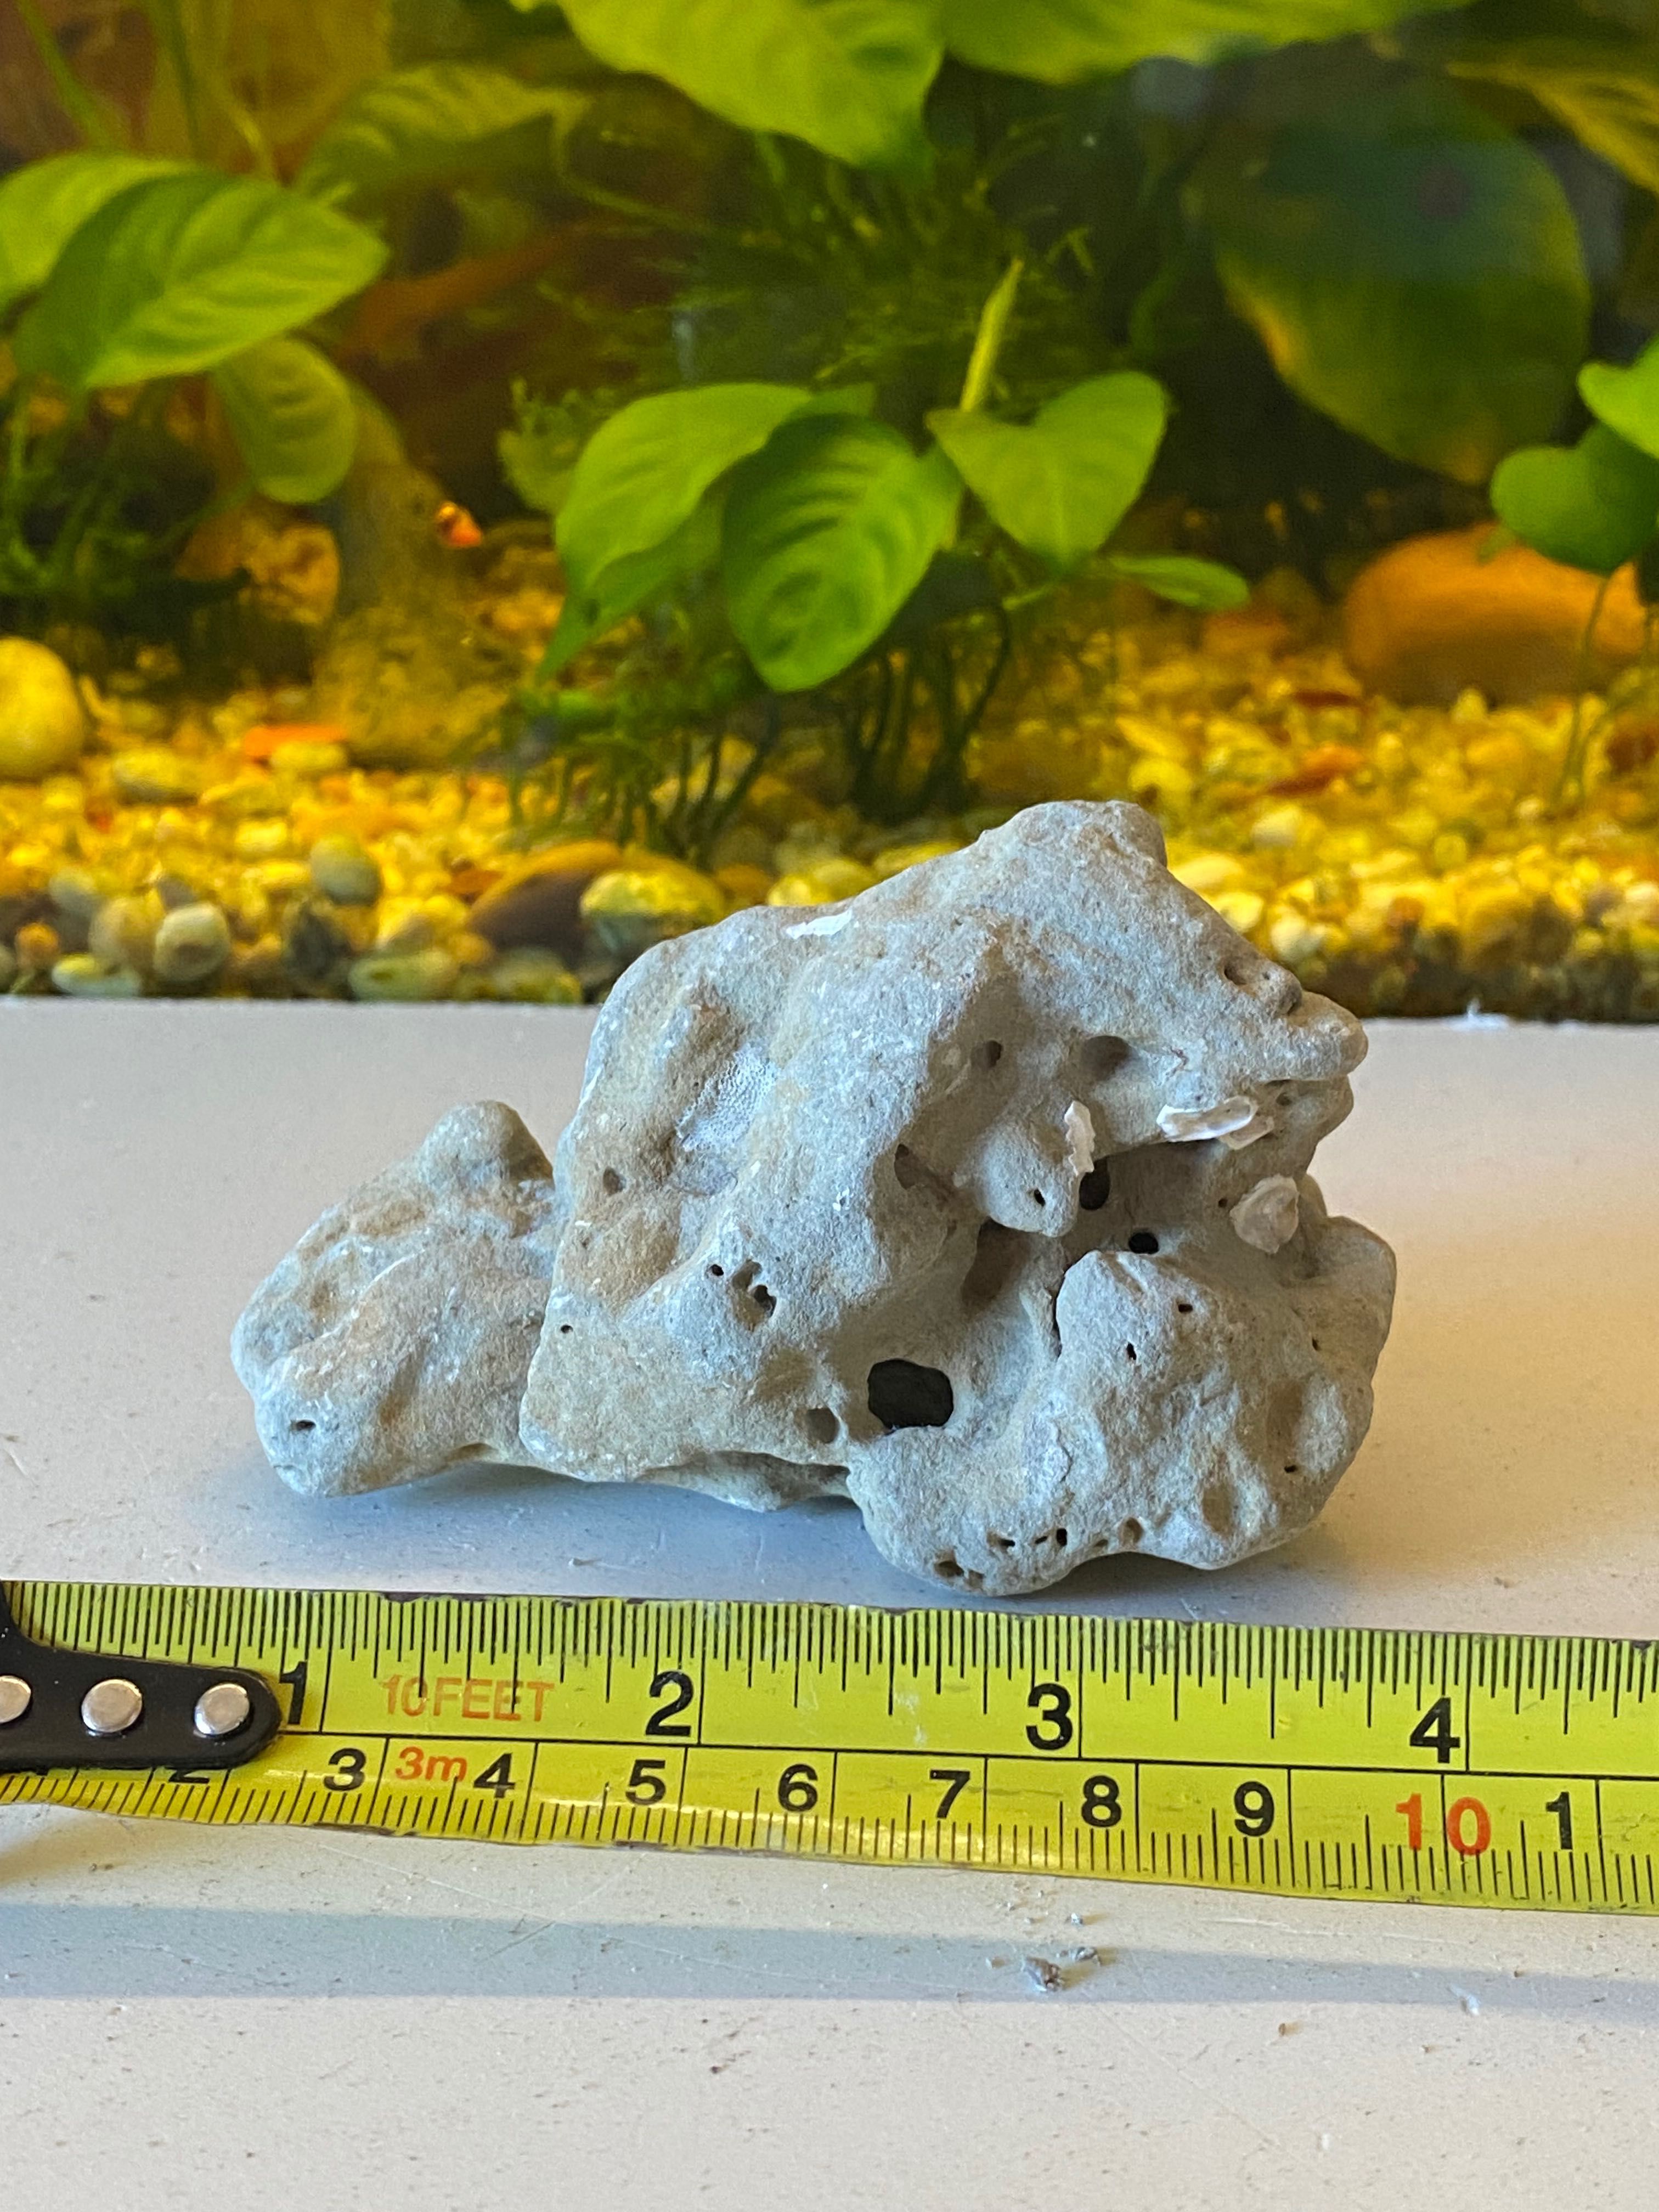 rochas naturais para aquário